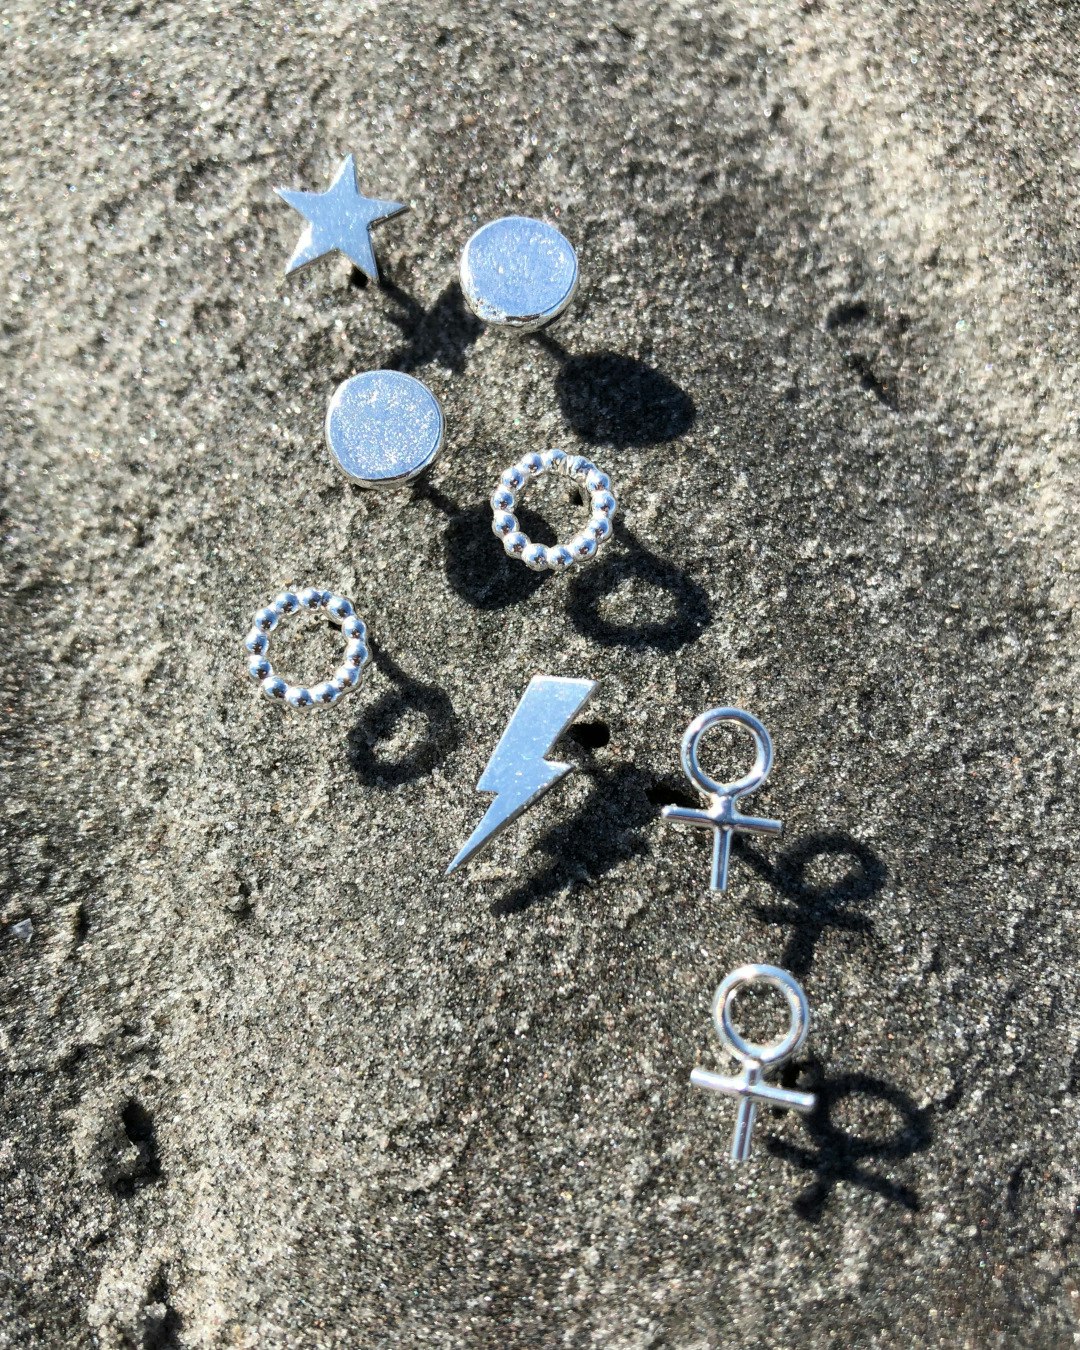 Litet örhänge, form av en kvinnosymbol. Flera örhängen på stranden tillsammans.